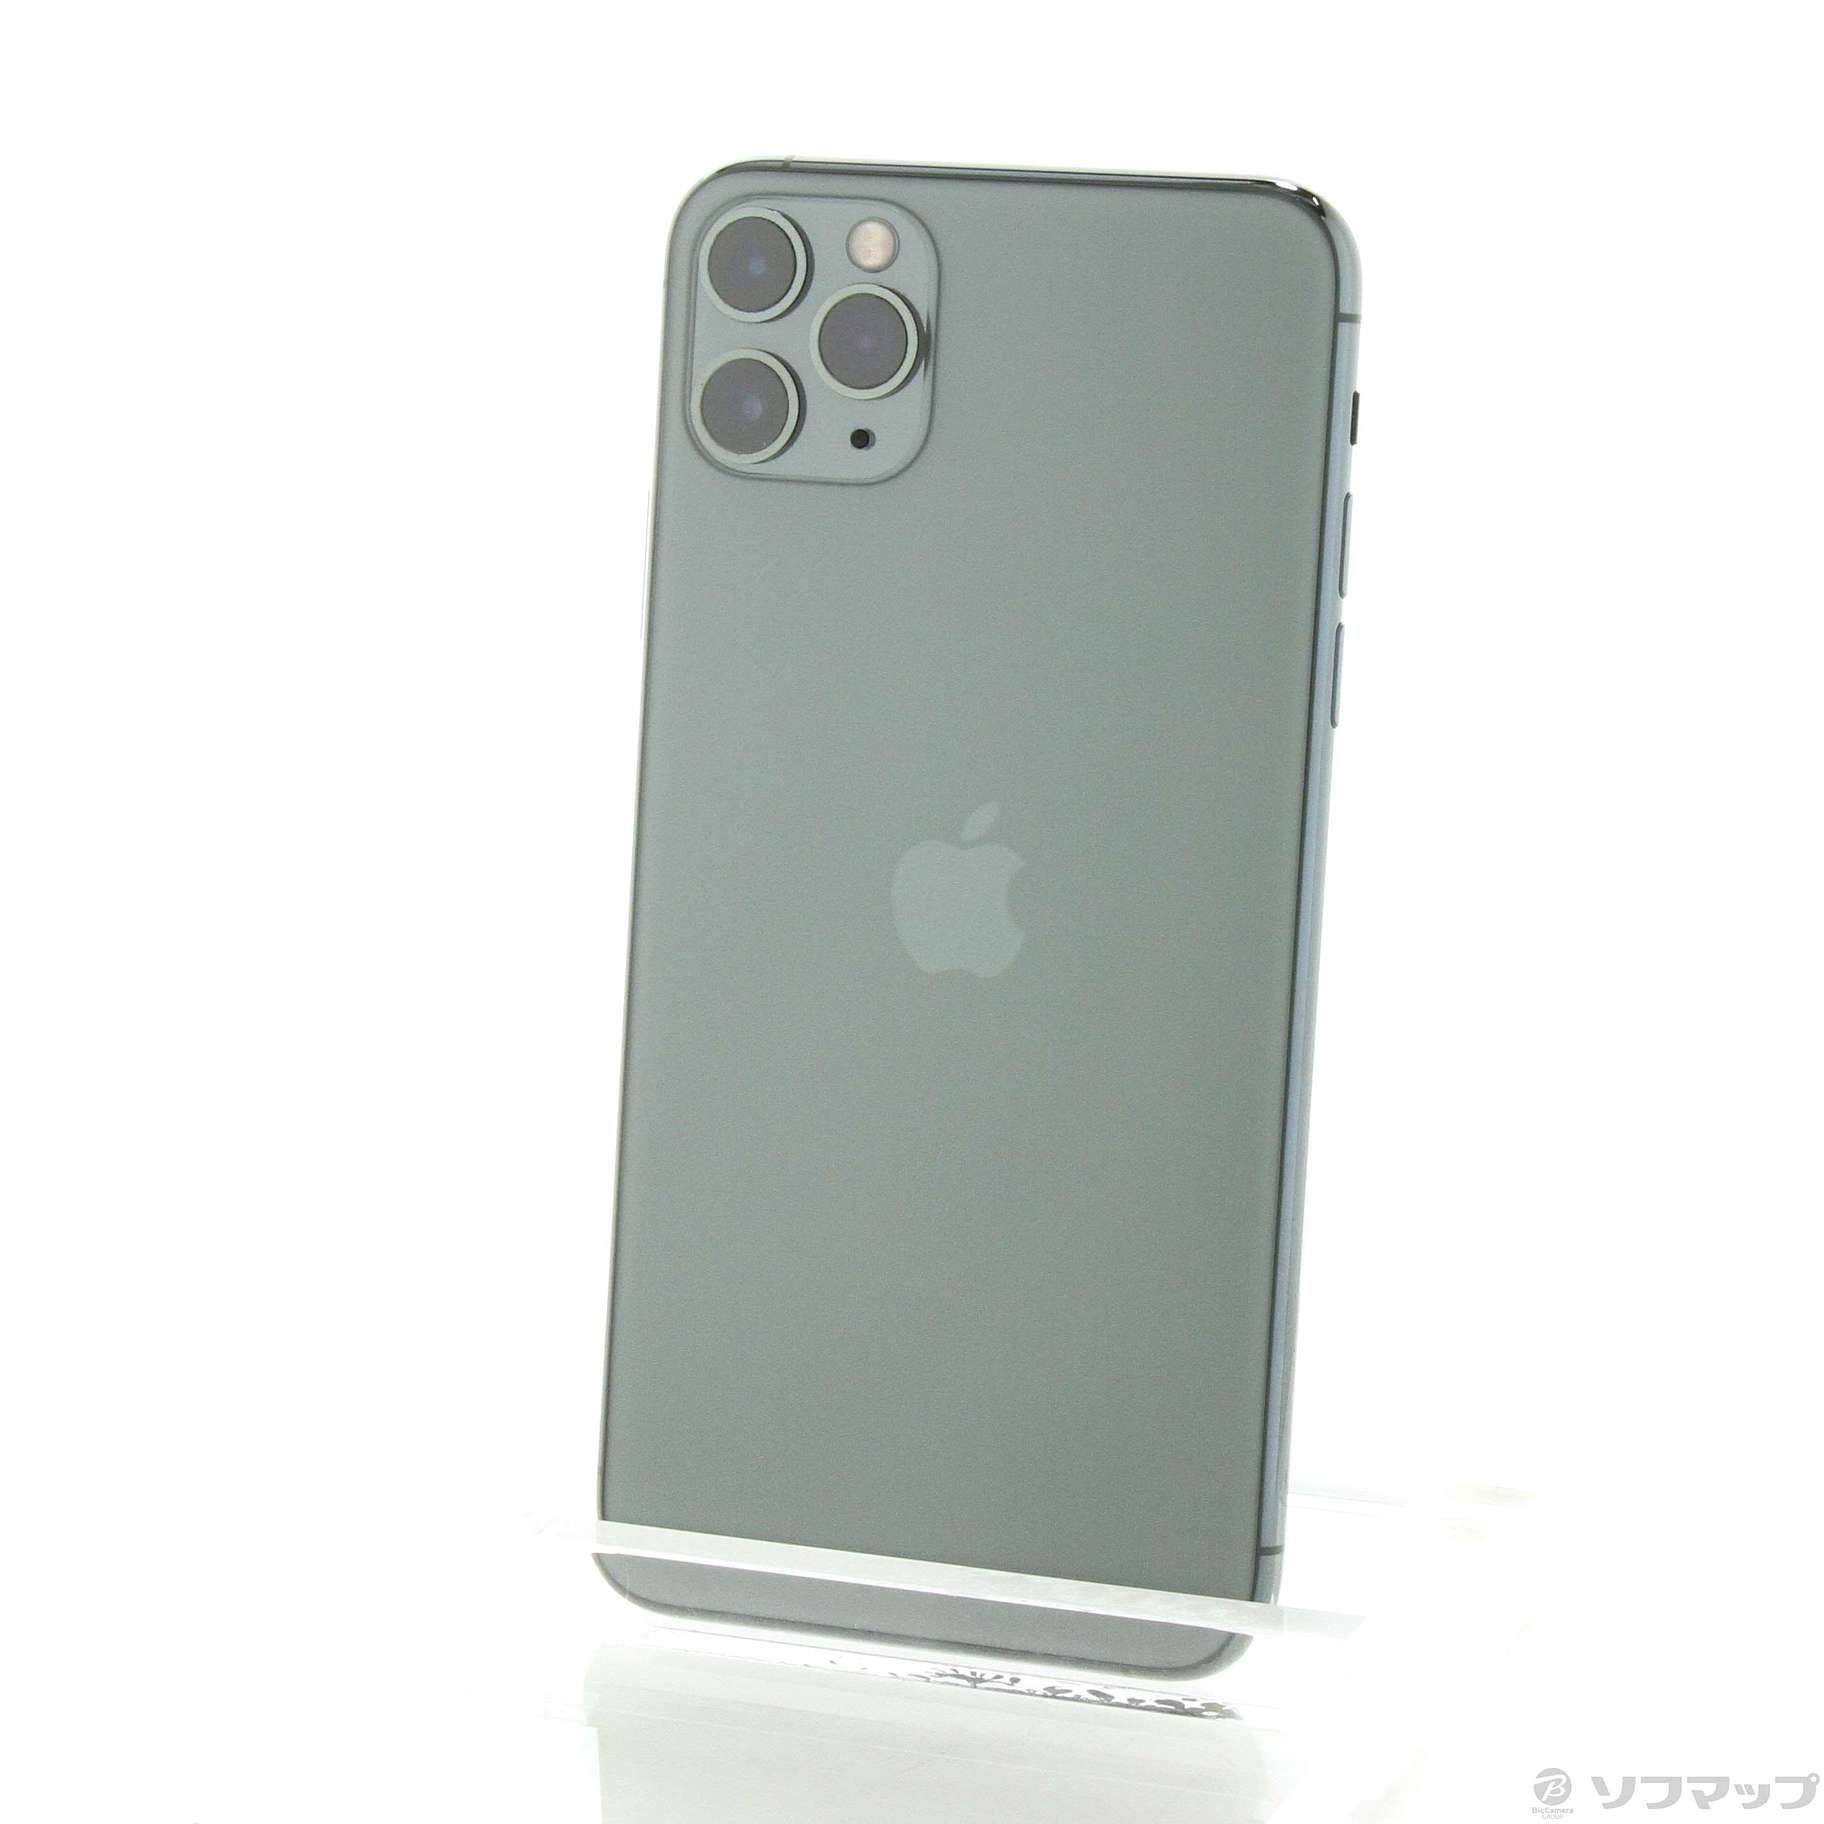 中古】セール対象品 iPhone11 Pro Max 256GB ミッドナイトグリーン